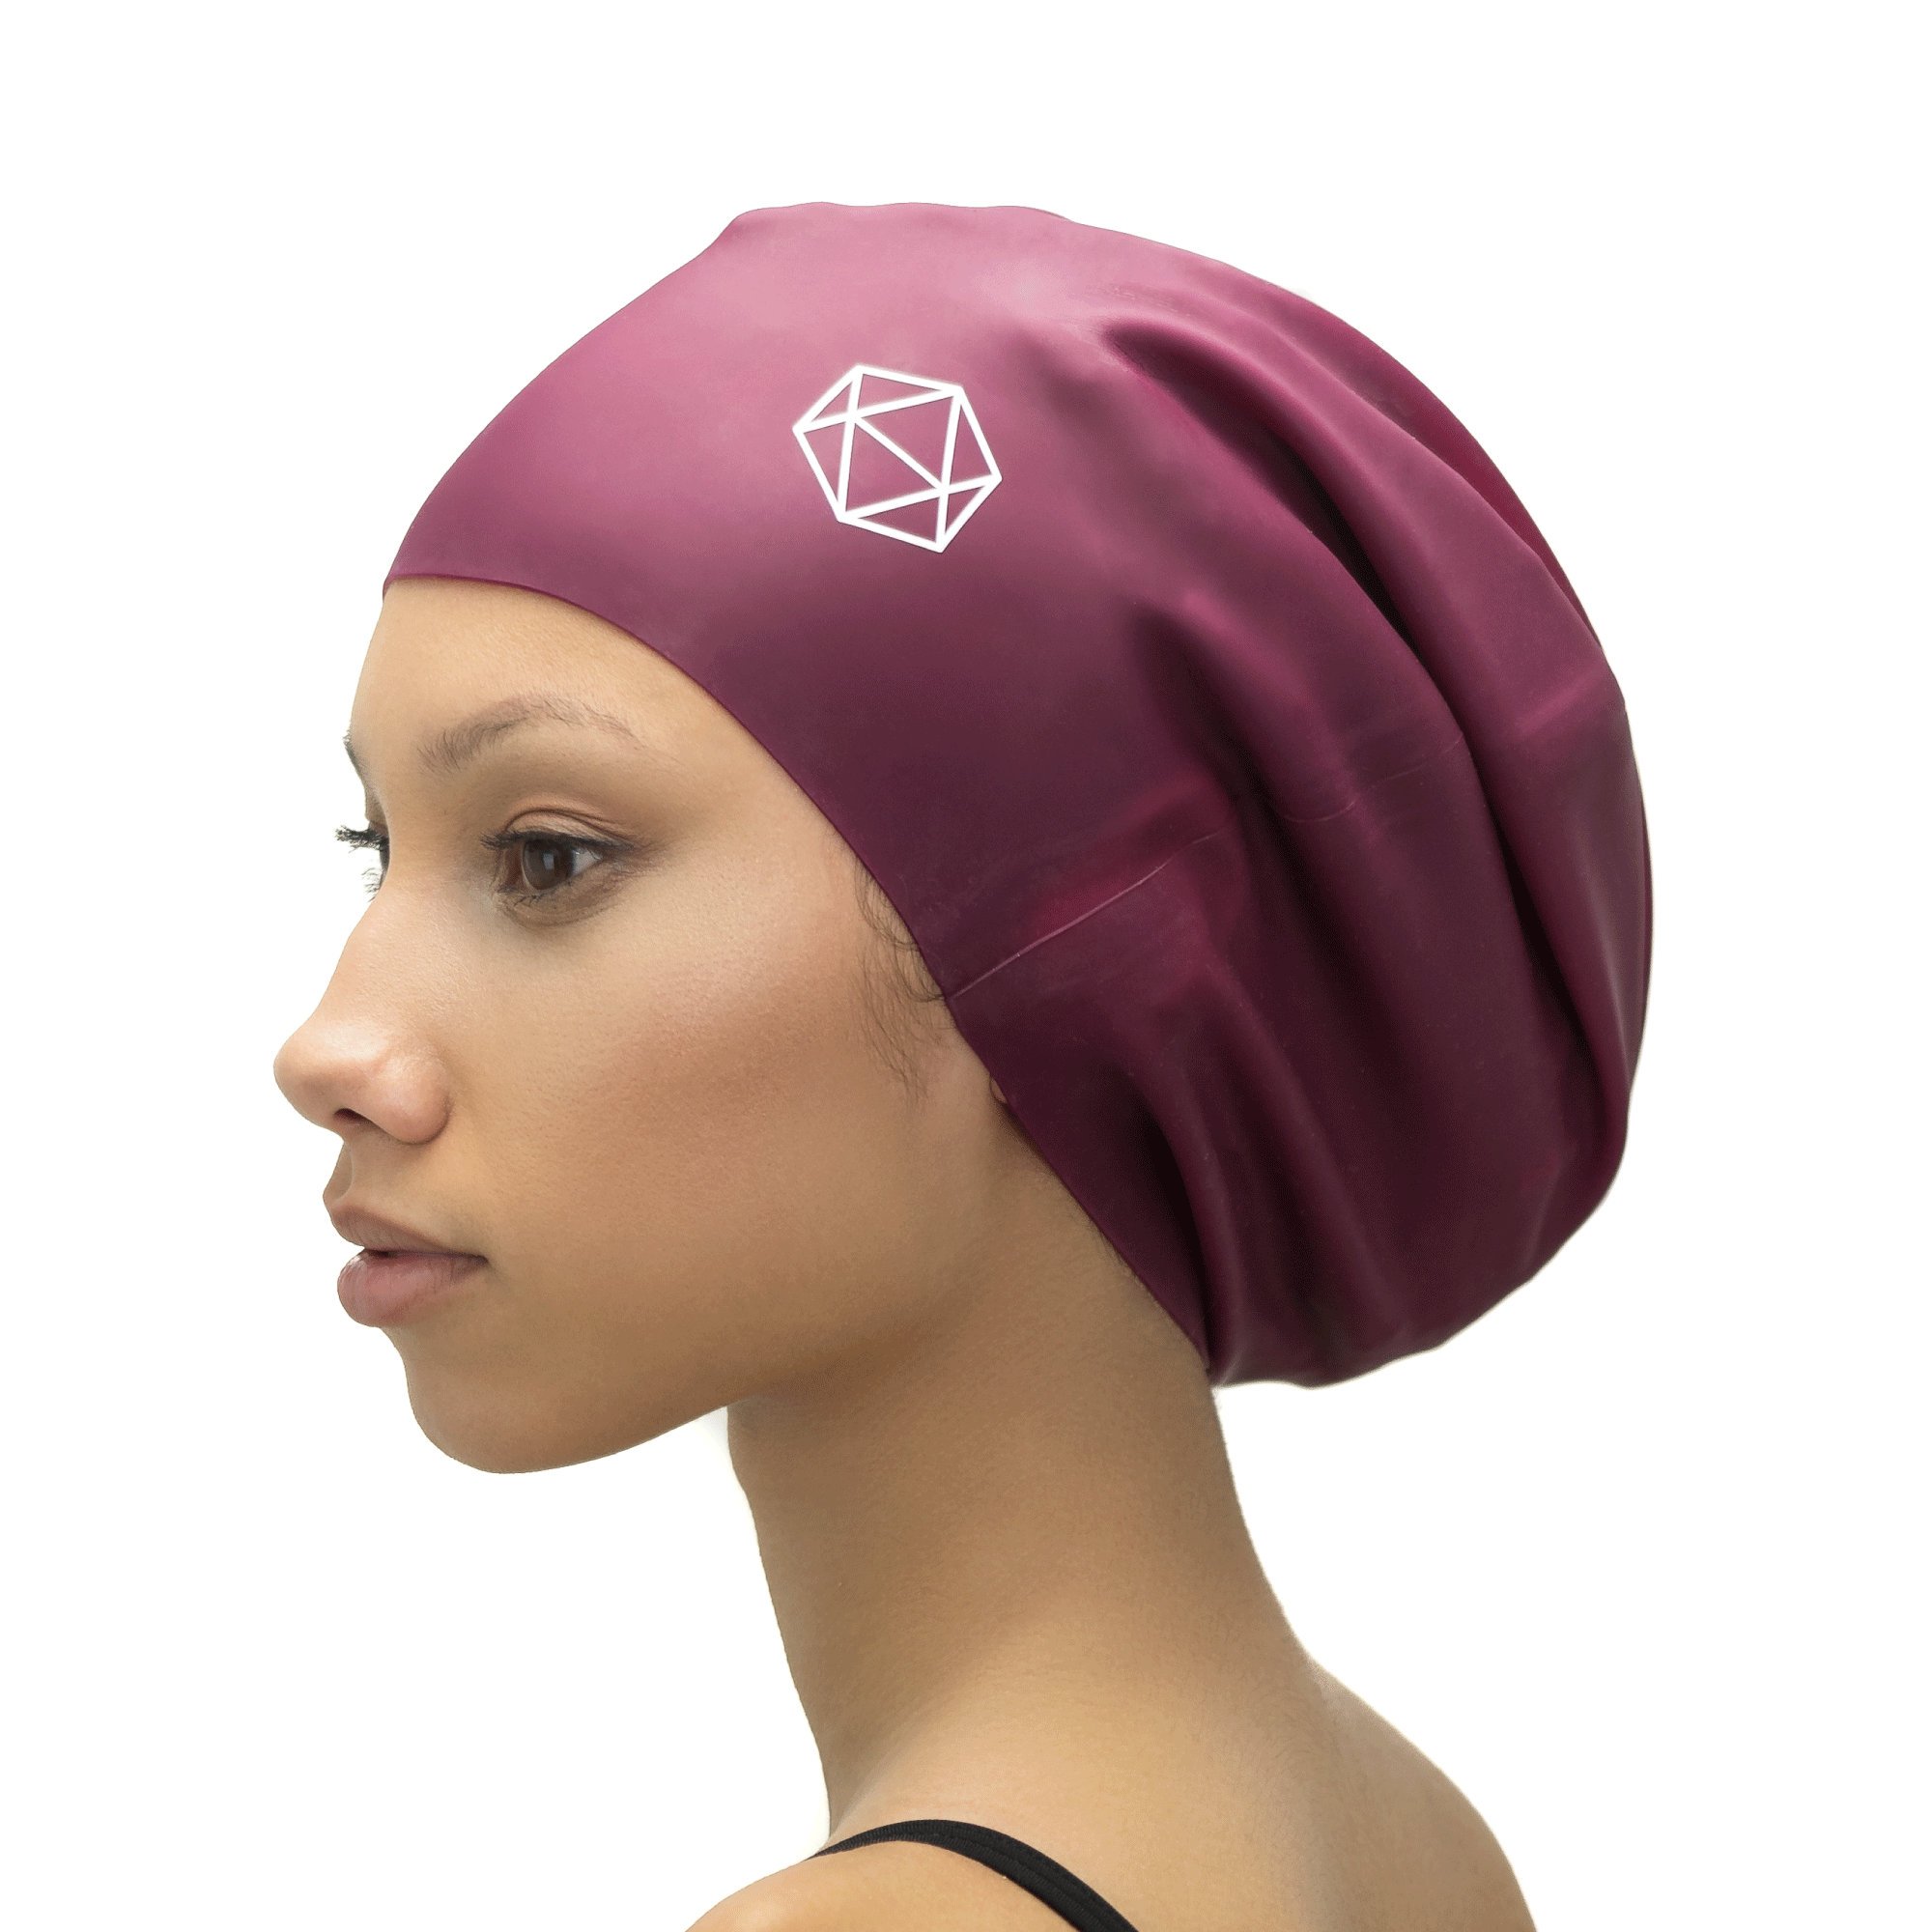 XL swims Caps for Locs - खरीद गर्नुहोस् नुहाउने टोपी नुहाउने टोपी